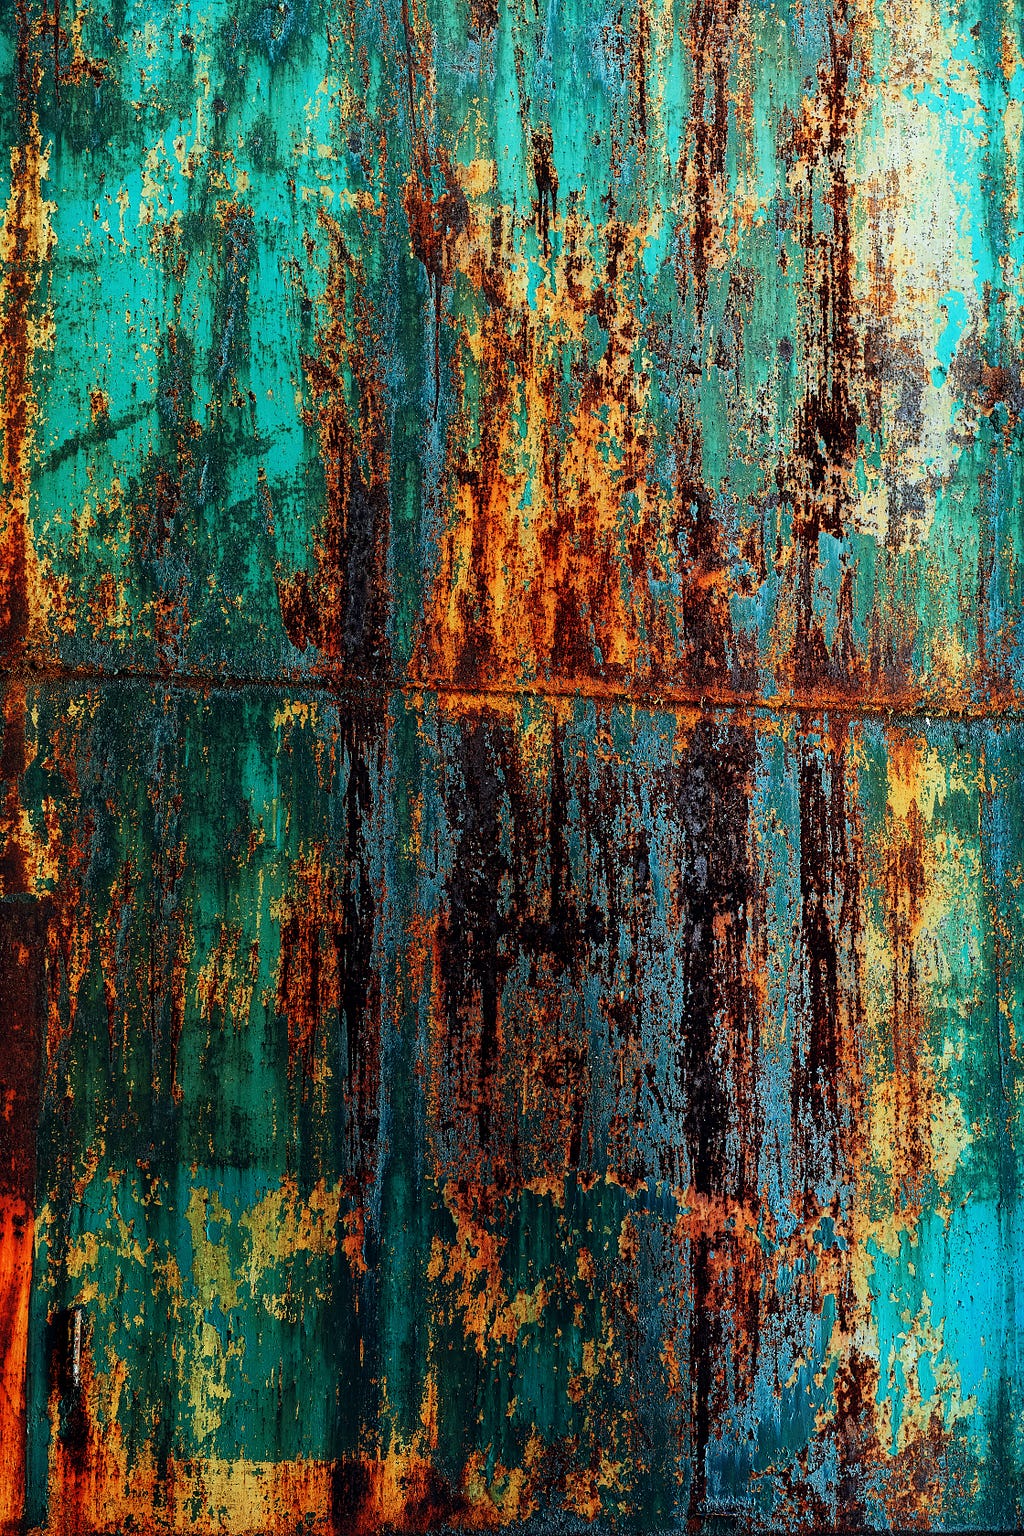 a rusty blue and brown metal door